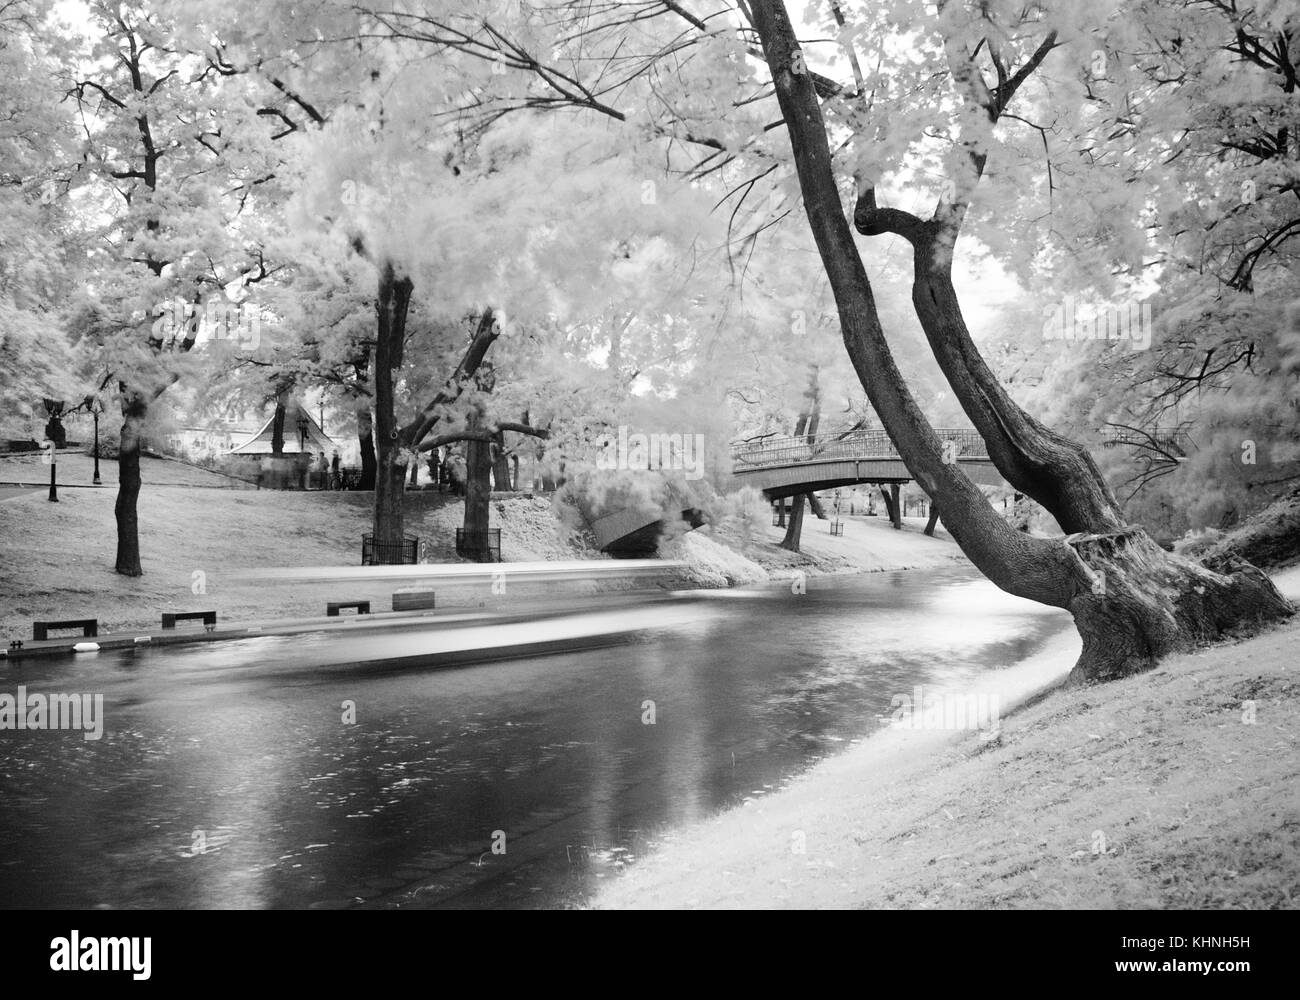 Ein Schwarzweiß-Foto von einem Park in Riga mit einem Boot vorbei rutscht auf einem Kanal mit schönen Bäumen auf beiden Seiten. Stockfoto